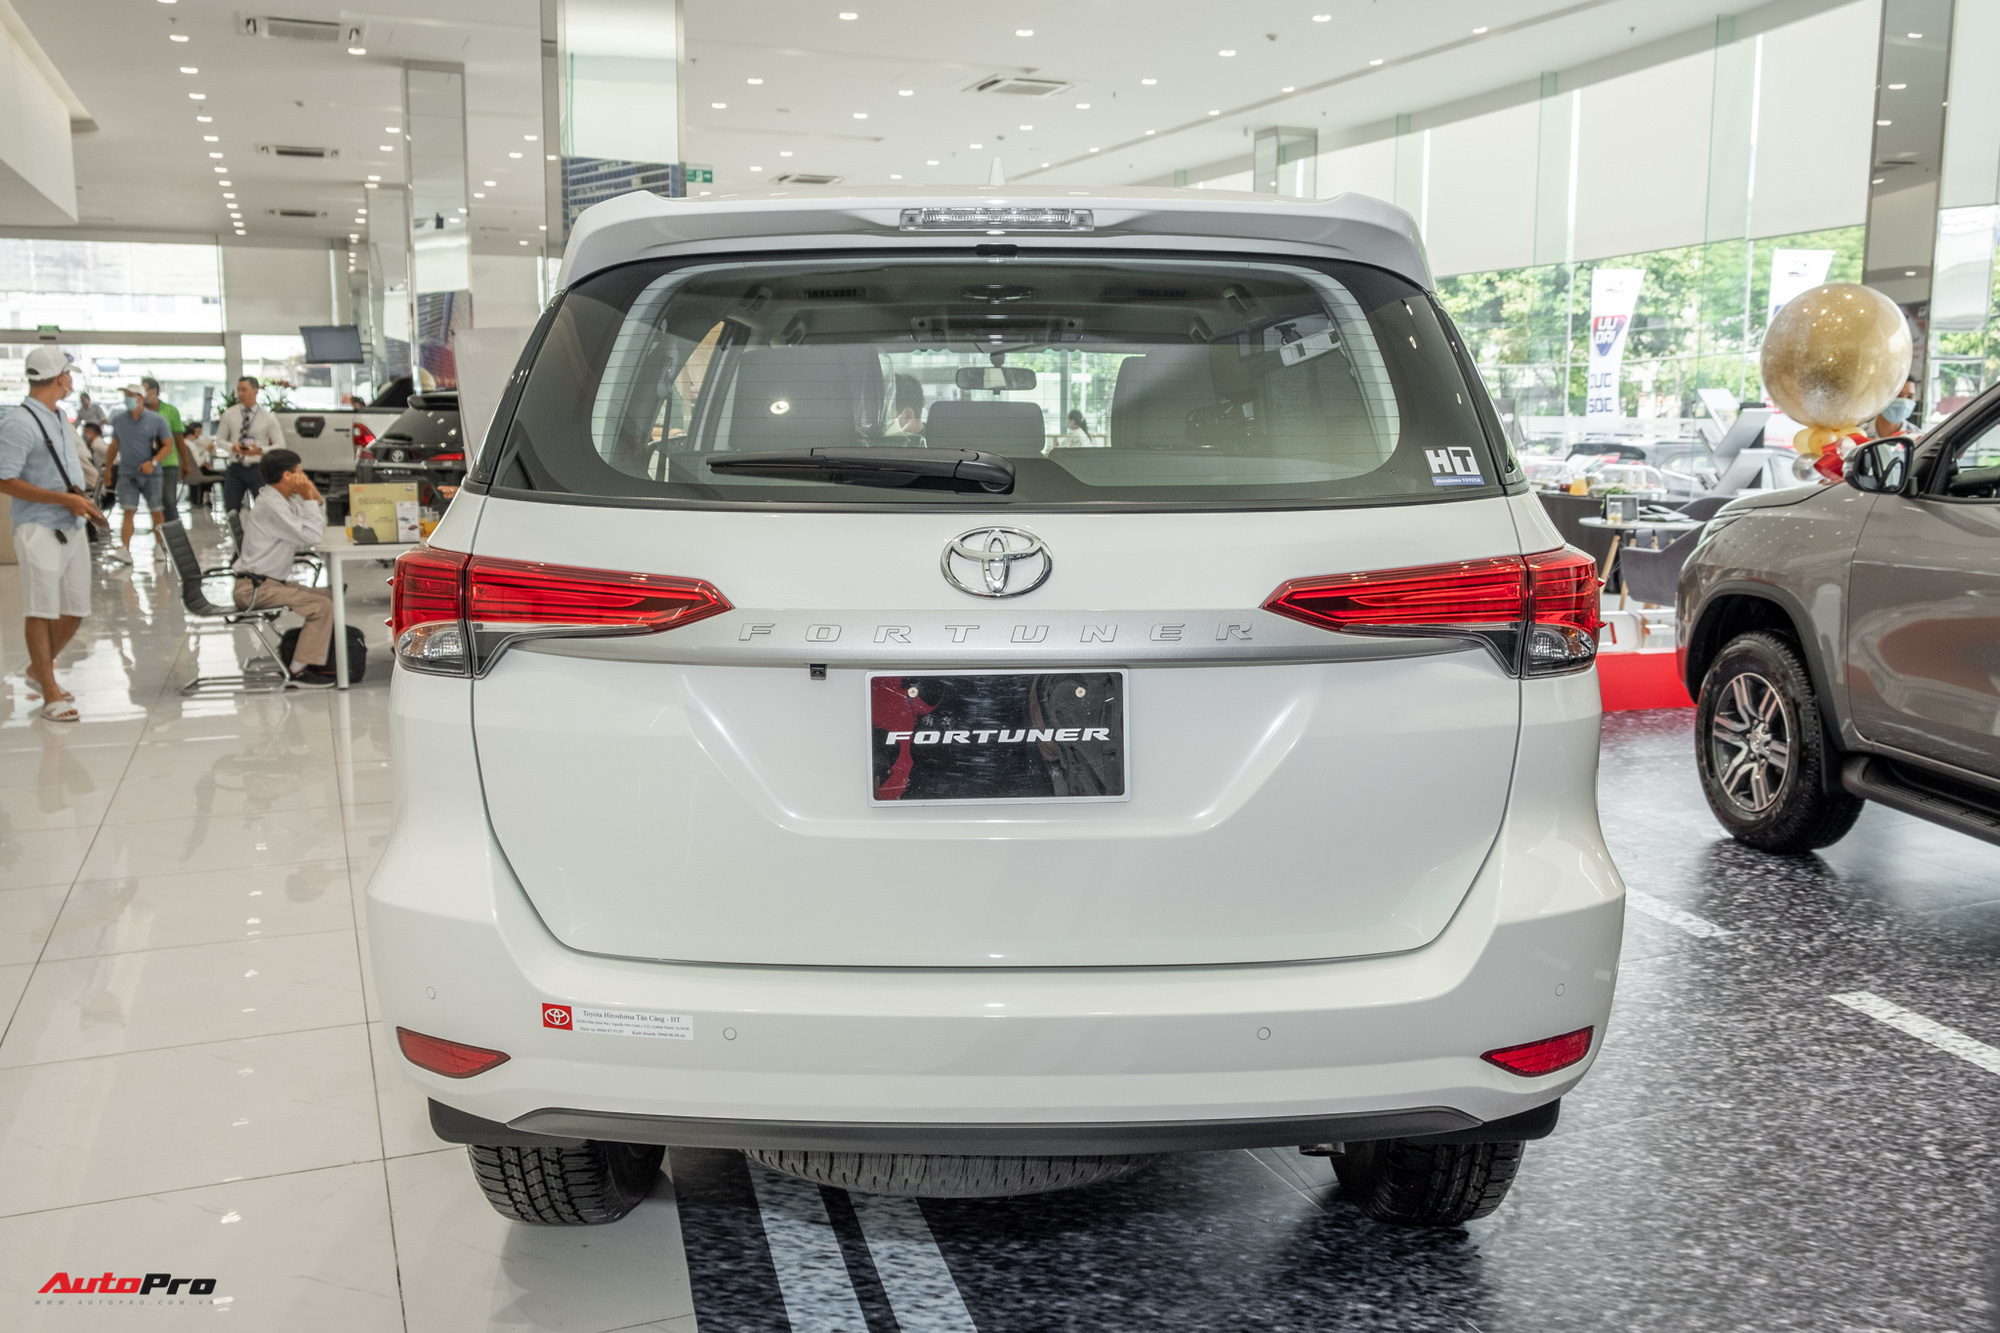 Chi tiết Toyota Fortuner 2021 bản rẻ nhất dưới 1 tỷ đồng: Trang bị thực dụng cho dân chạy dịch vụ - Ảnh 7.